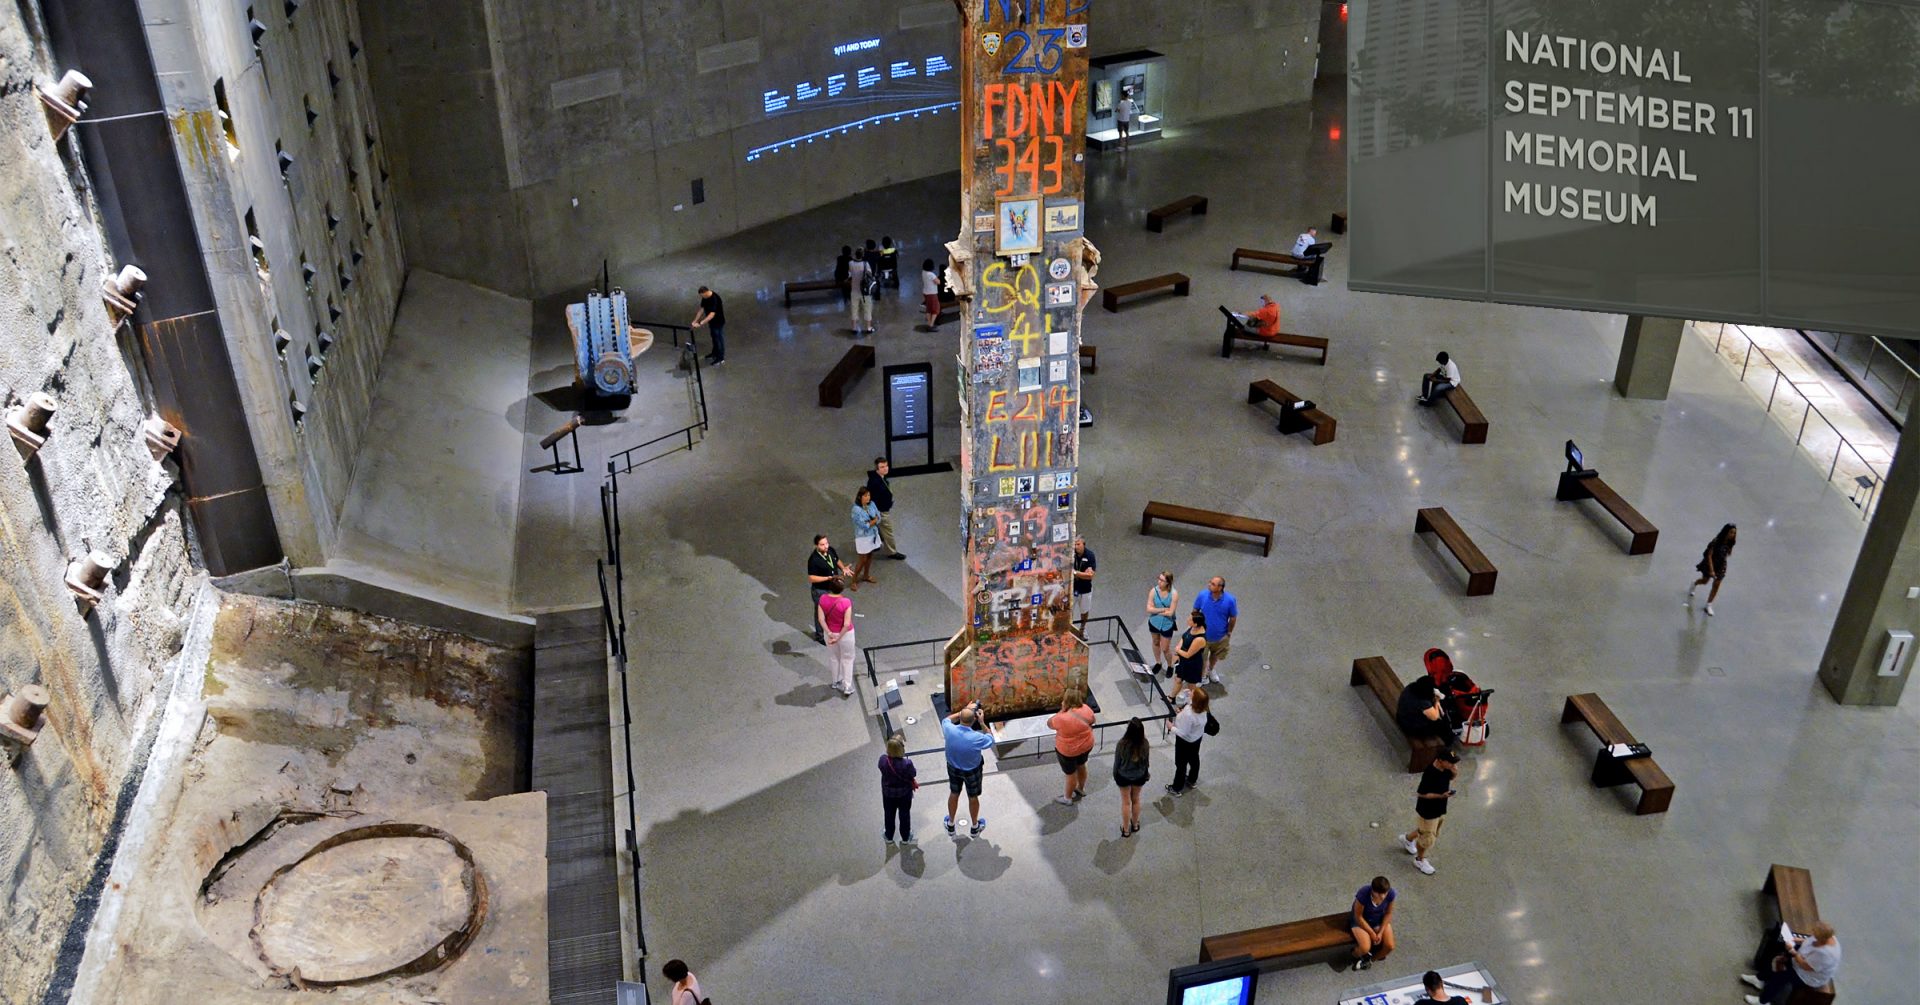 9/11 Memorial Museum - National September 11 Memorial Museum